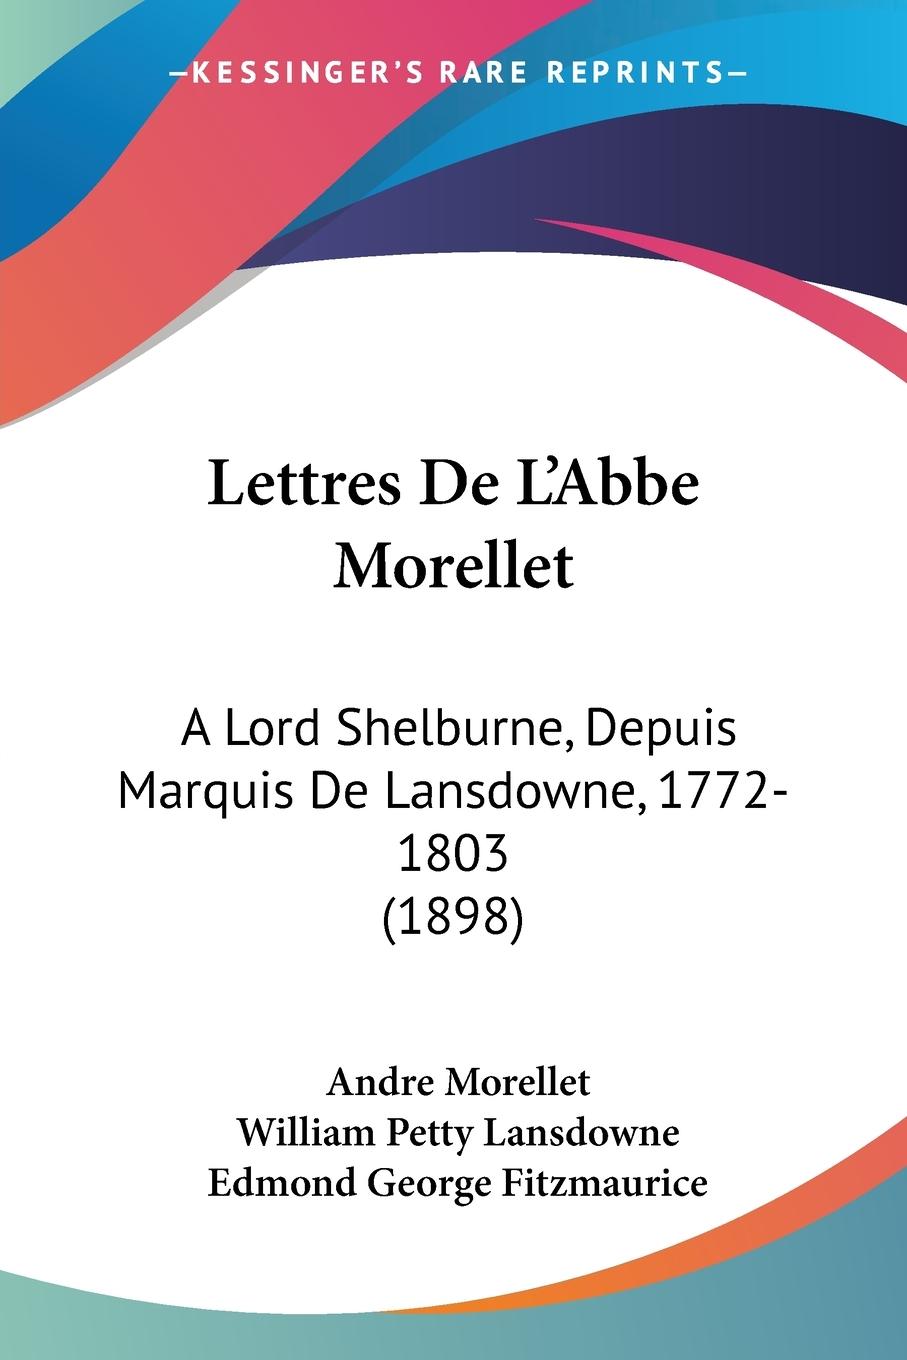 Lettres De L Abbe Morellet - Morellet, Andre Lansdowne, William Petty Fitzmaurice, Edmond George